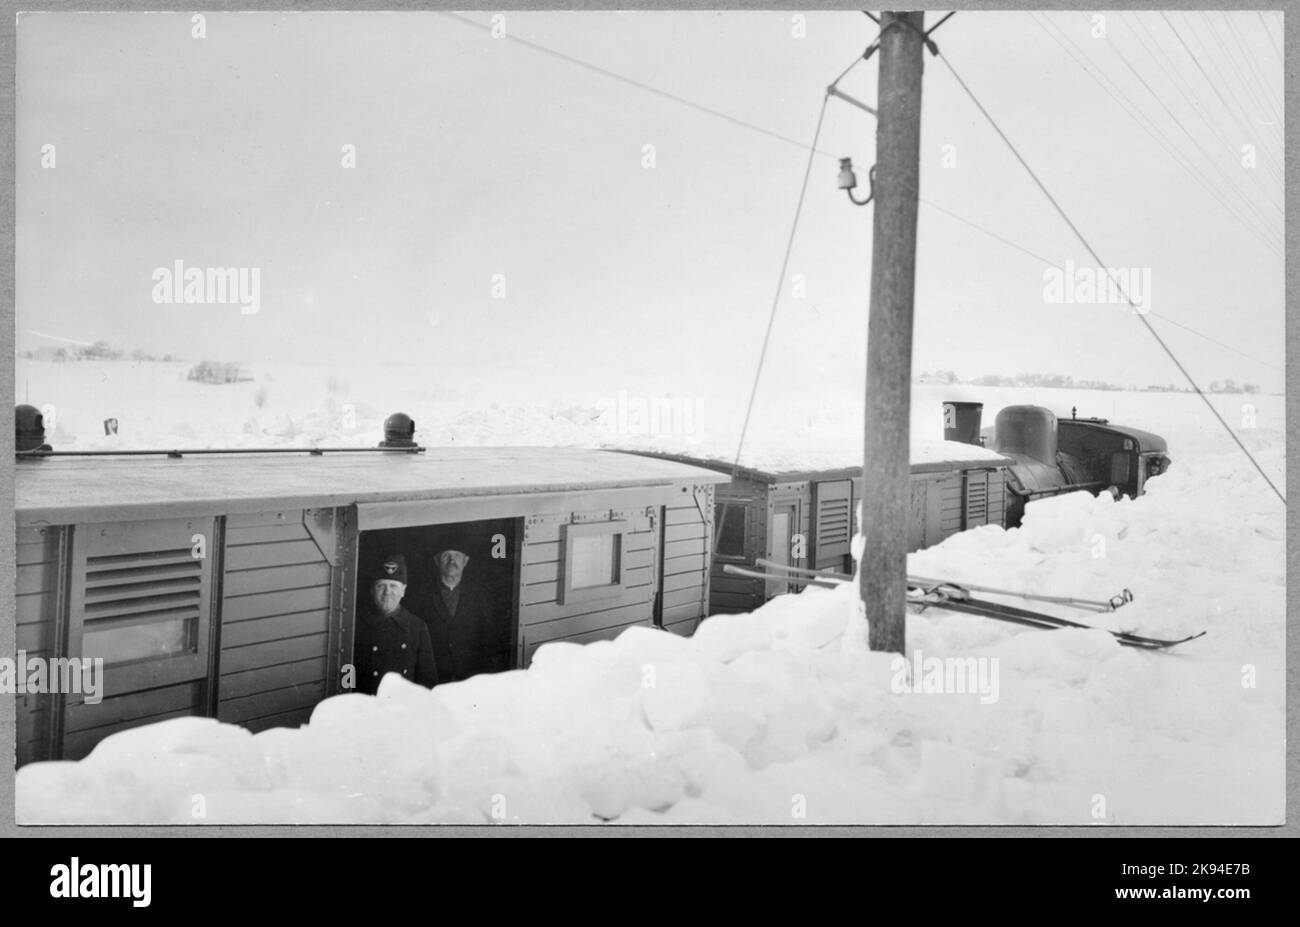 Sur 1 mars 1942, depuis la prise de la photo, les chutes de neige avaient augmenté d'environ 1 mètres de hauteur selon la ration 28 Ystad 18/3-42. Borrby - Hammenhög. Banque D'Images